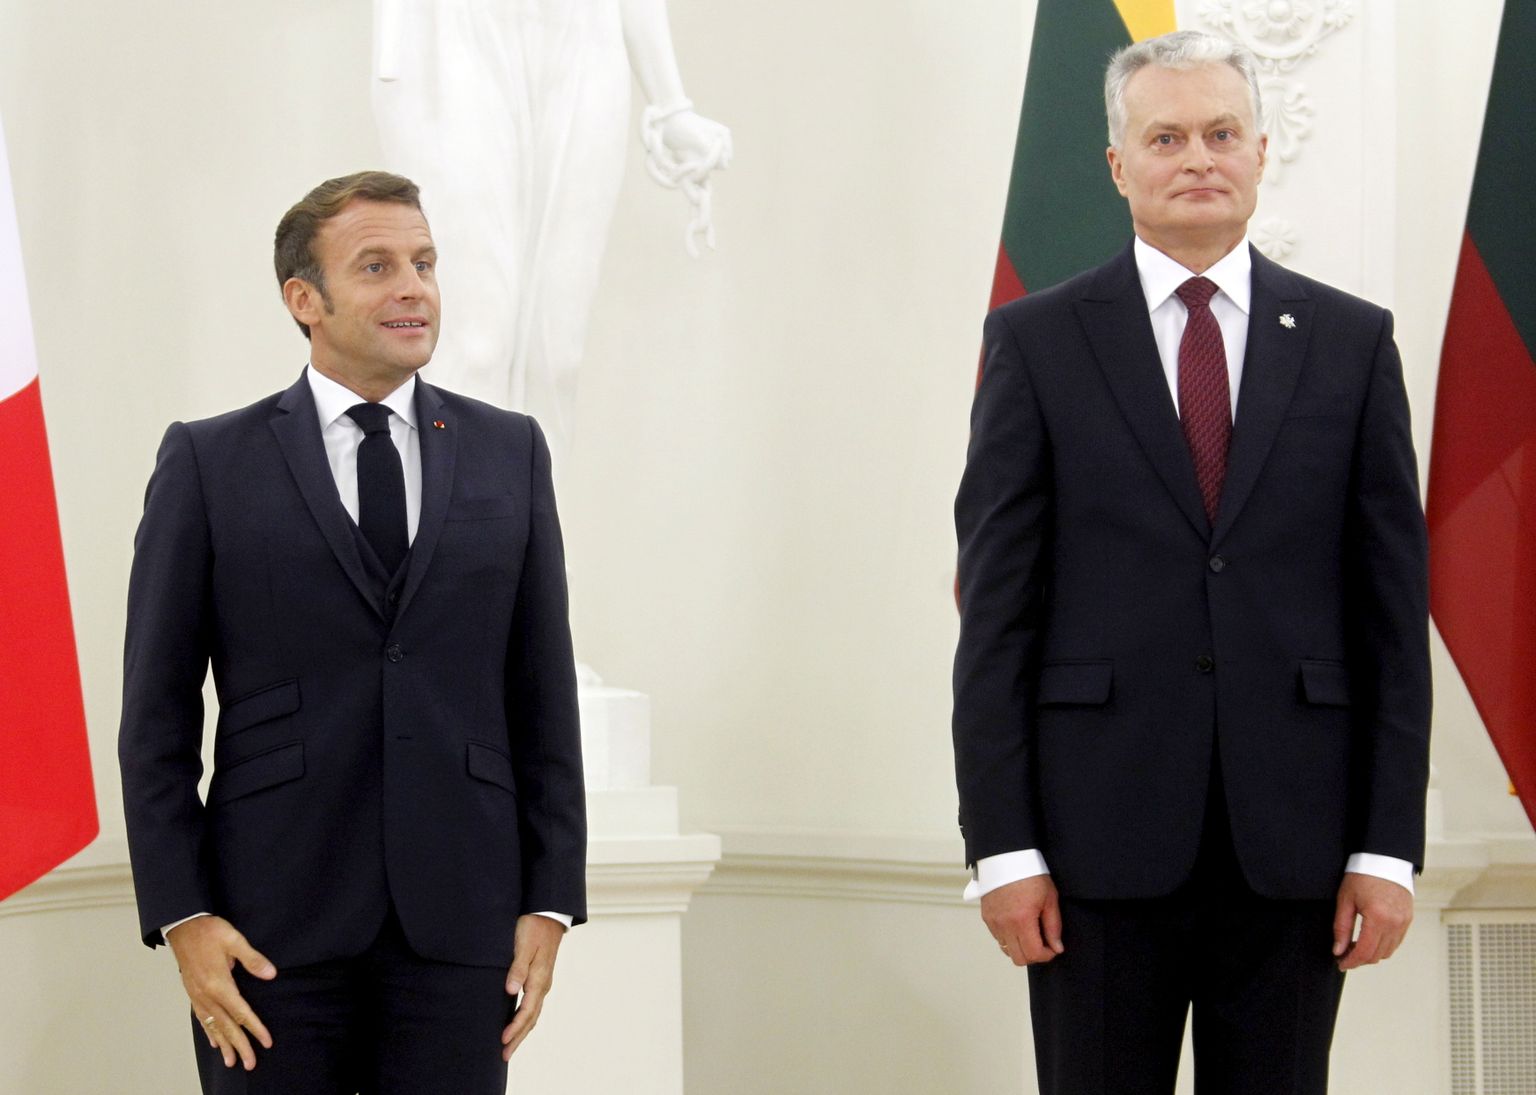 Leedu president Gitanas Nausėda (paremal) ja Prantsuse president Emmanuel Macron Vilniuses 28. septembril 2020.